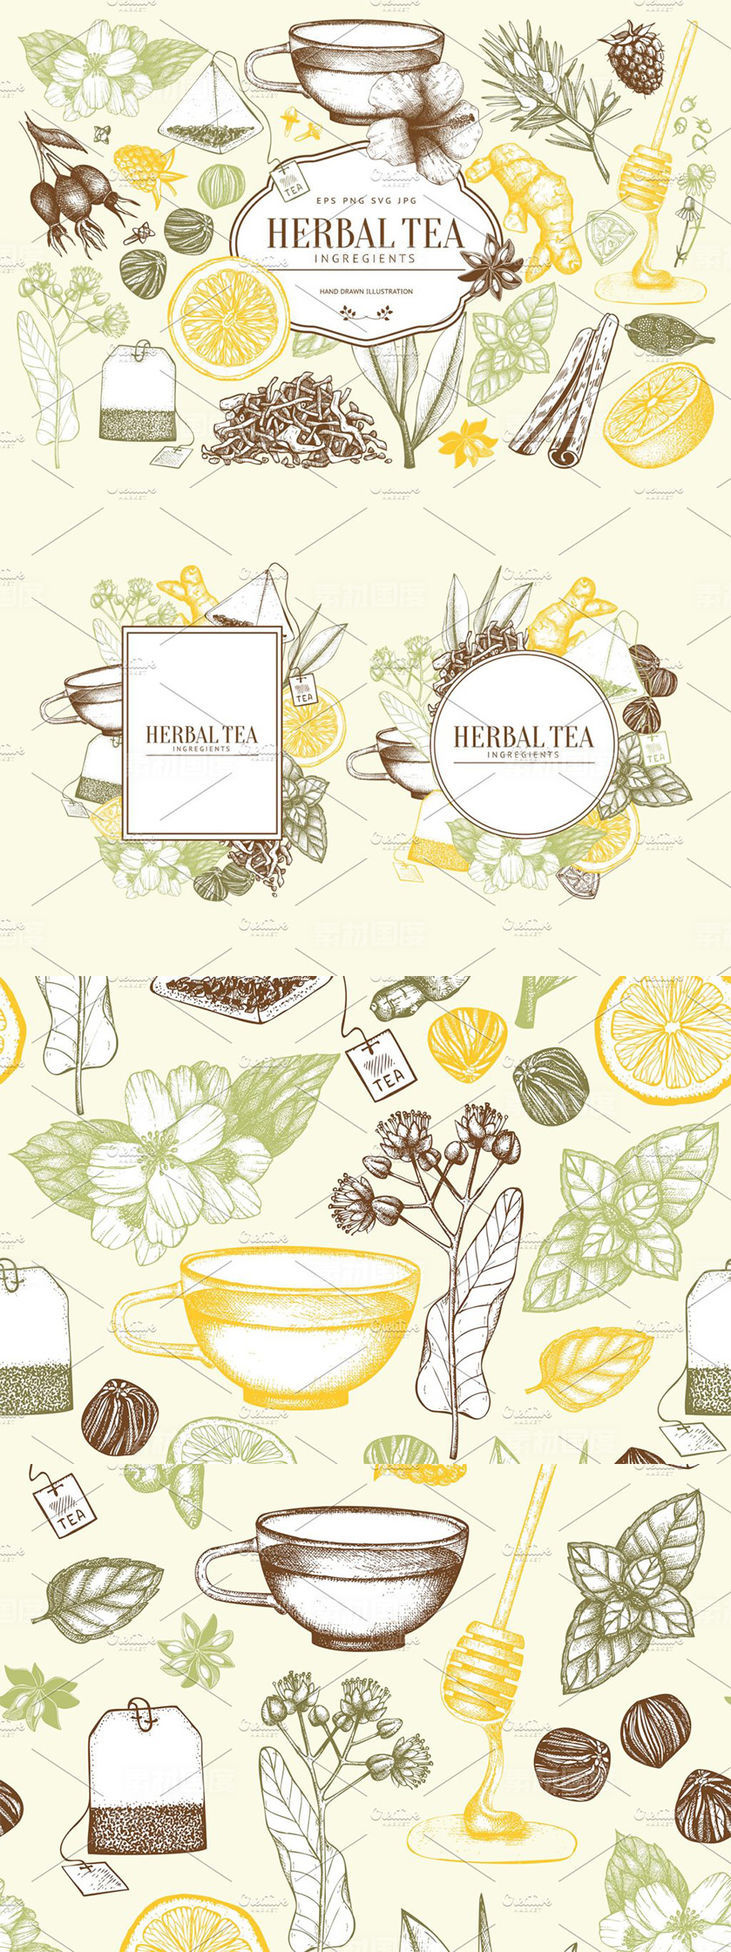 老式凉茶草药成分矢量插图合集 Vector Herbal Tea Ingredients Set